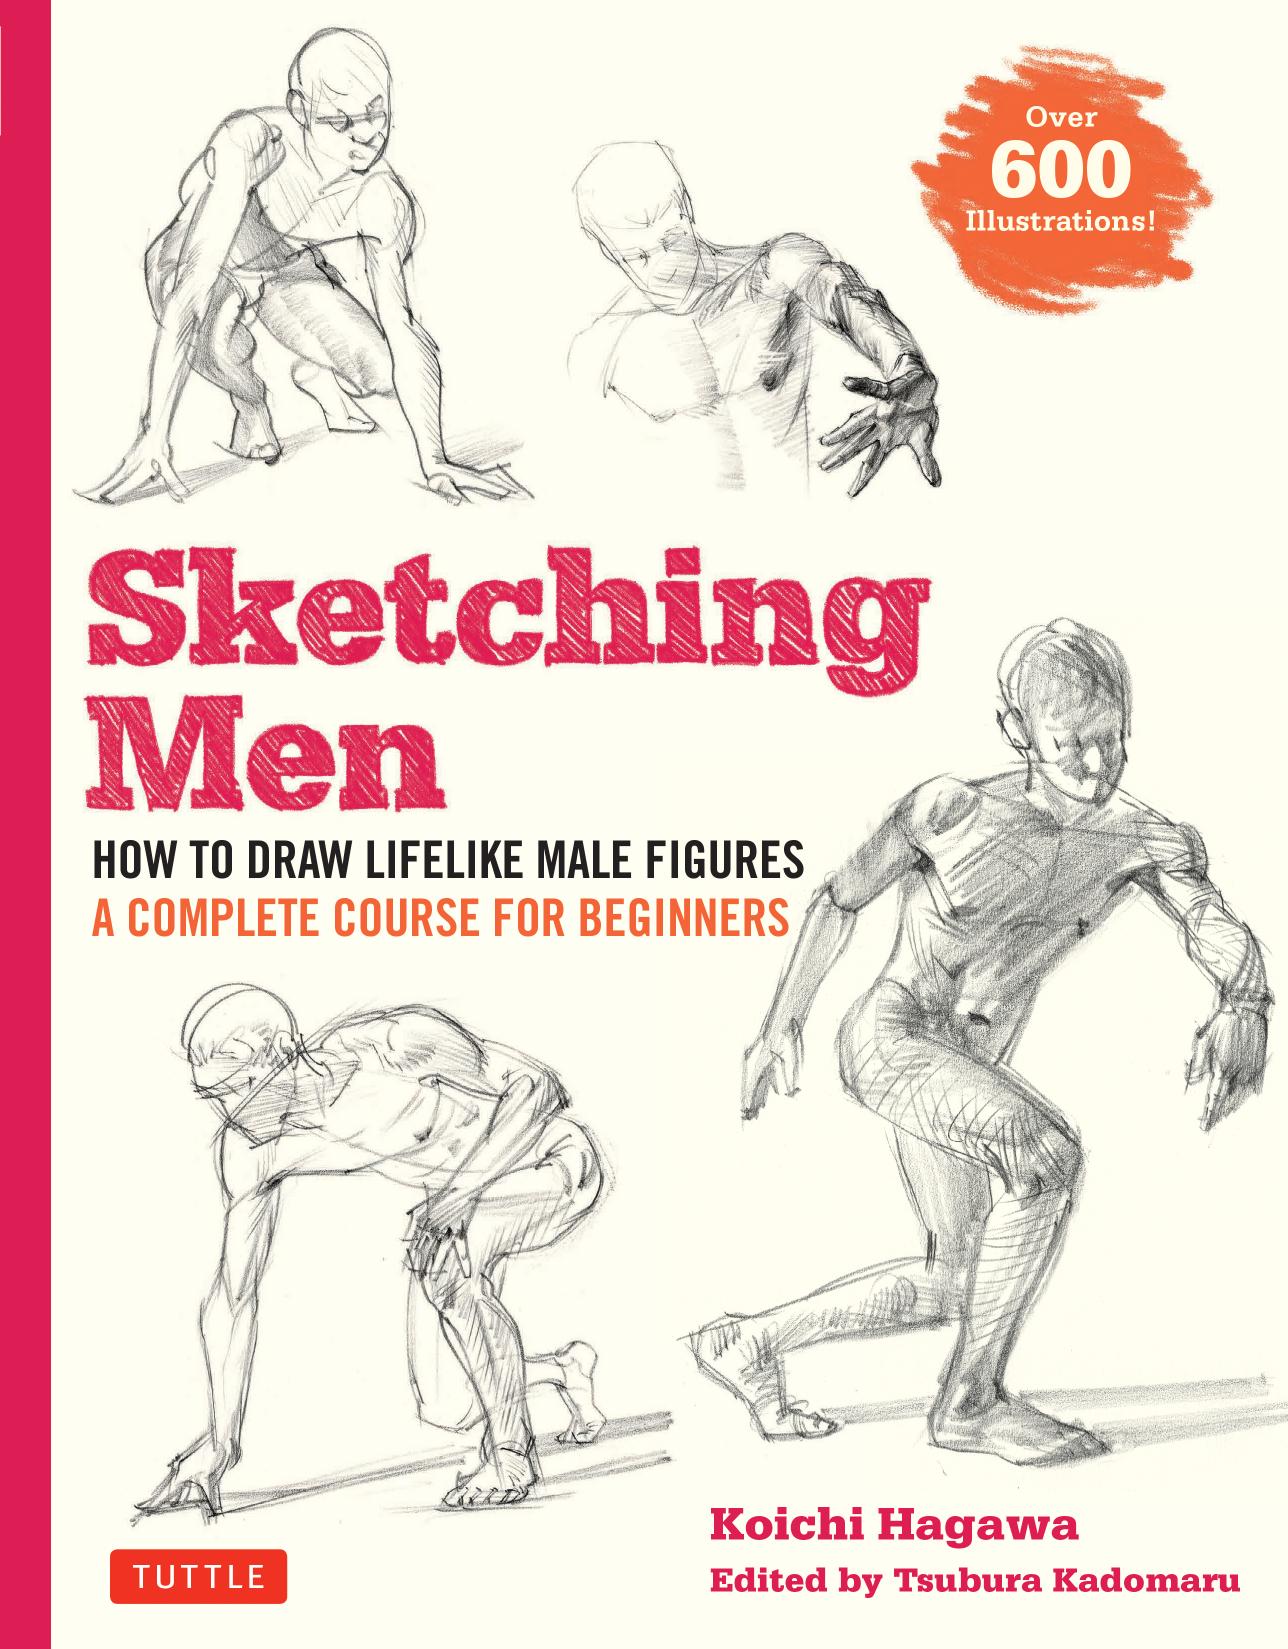 Sketching Men_Interior V2-R1 JS edit_200629.indd